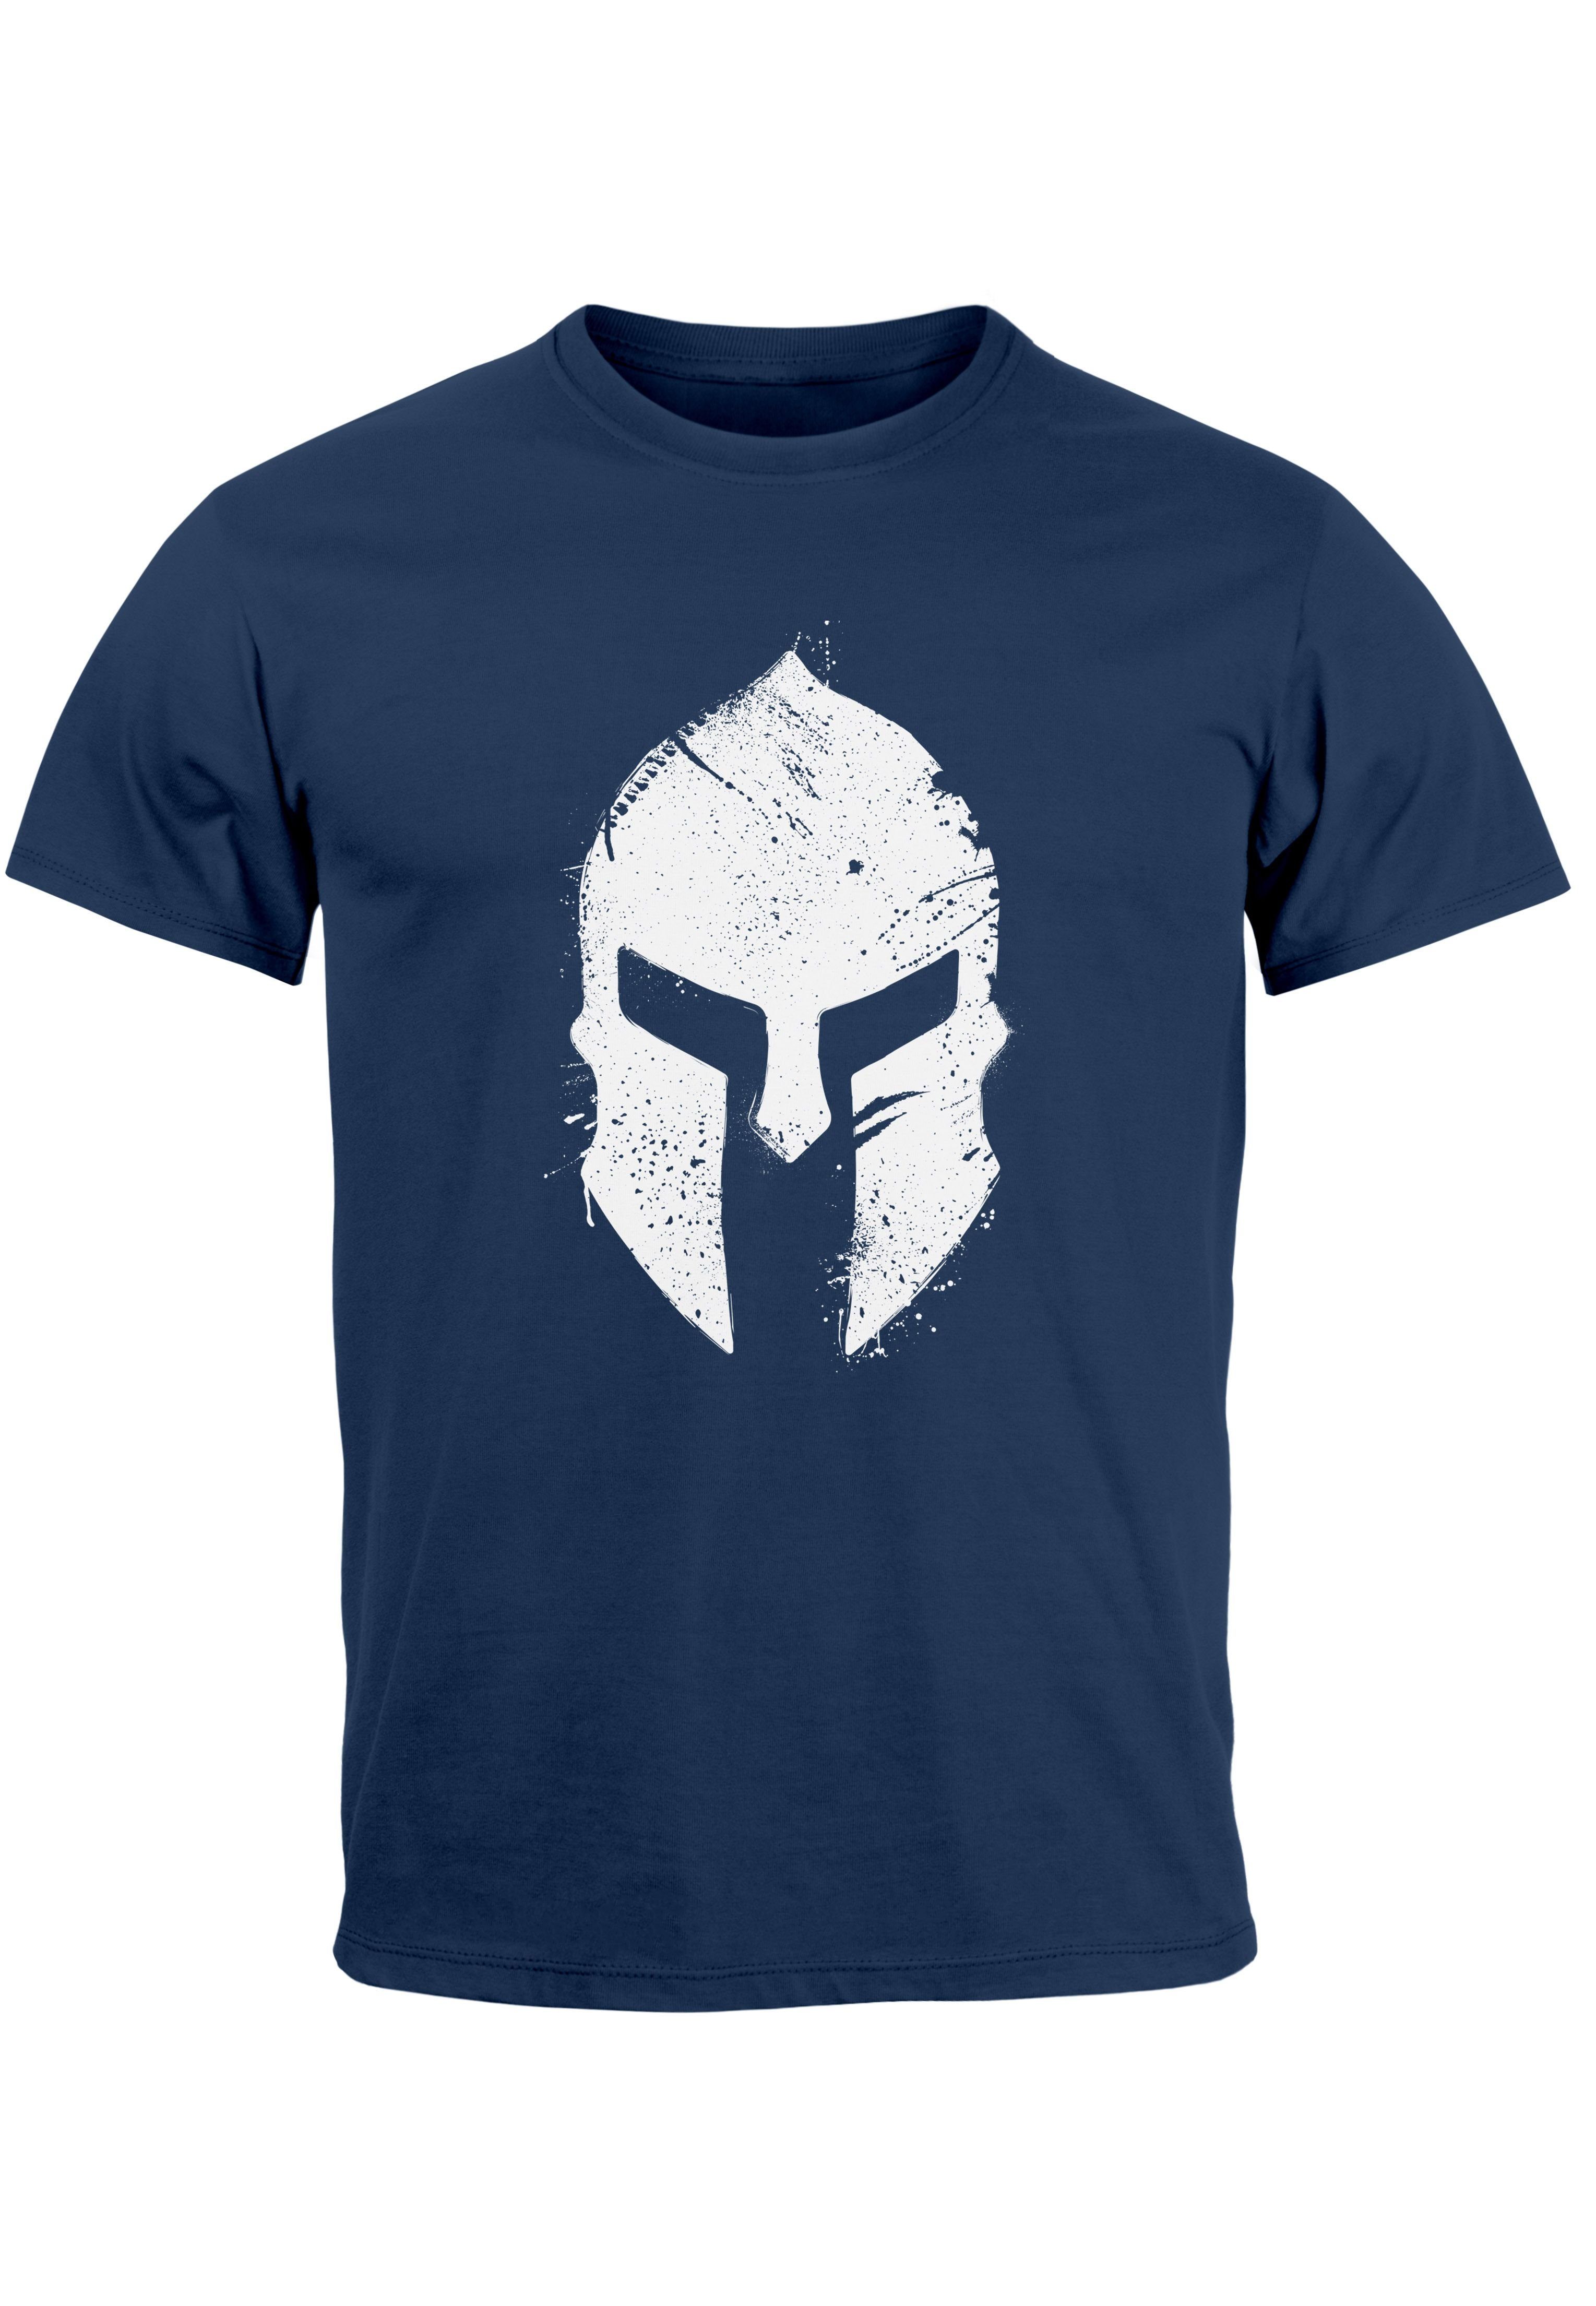 Print T-Shirt Aufdruck Sparta-Helm Neverless Print Krieger Herren Print-Shirt Sp Warrior mit Gladiator navy